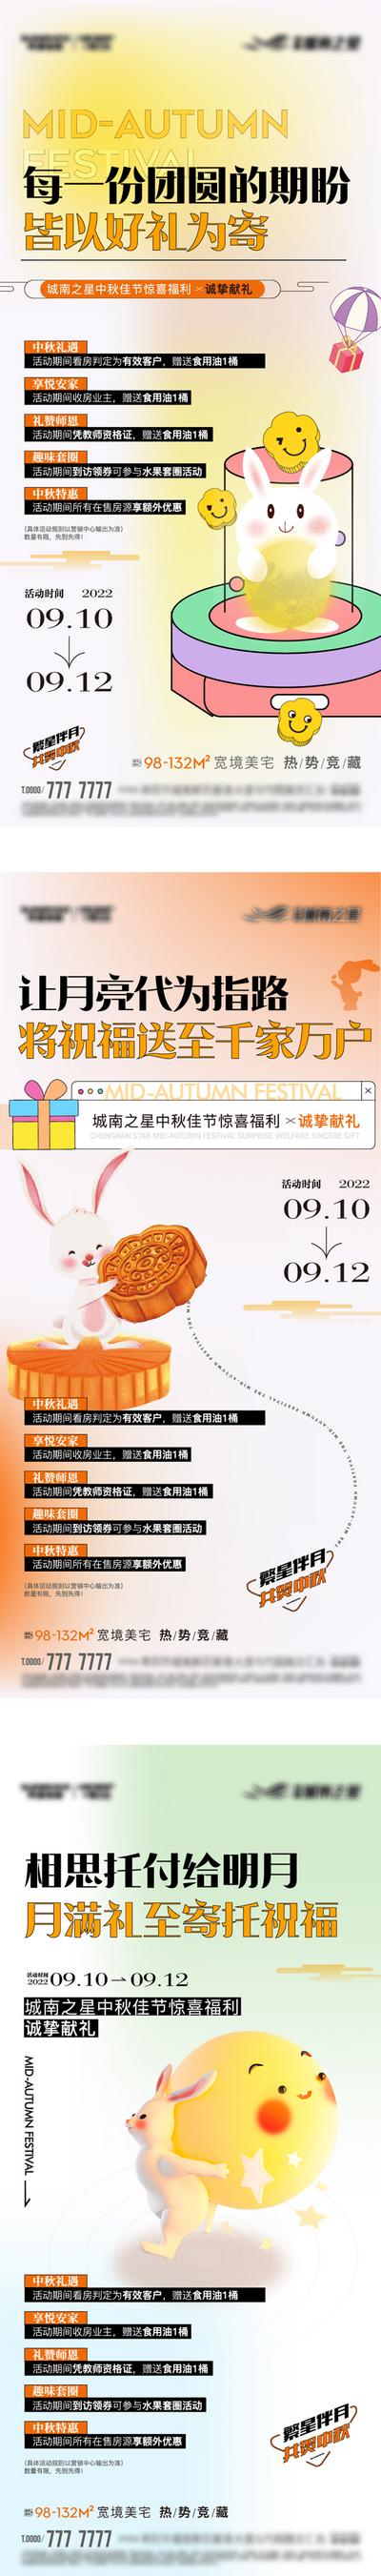 南门网 海报 中国传统节日 中秋节 福利 五重礼 兔子 月饼 插画 系列